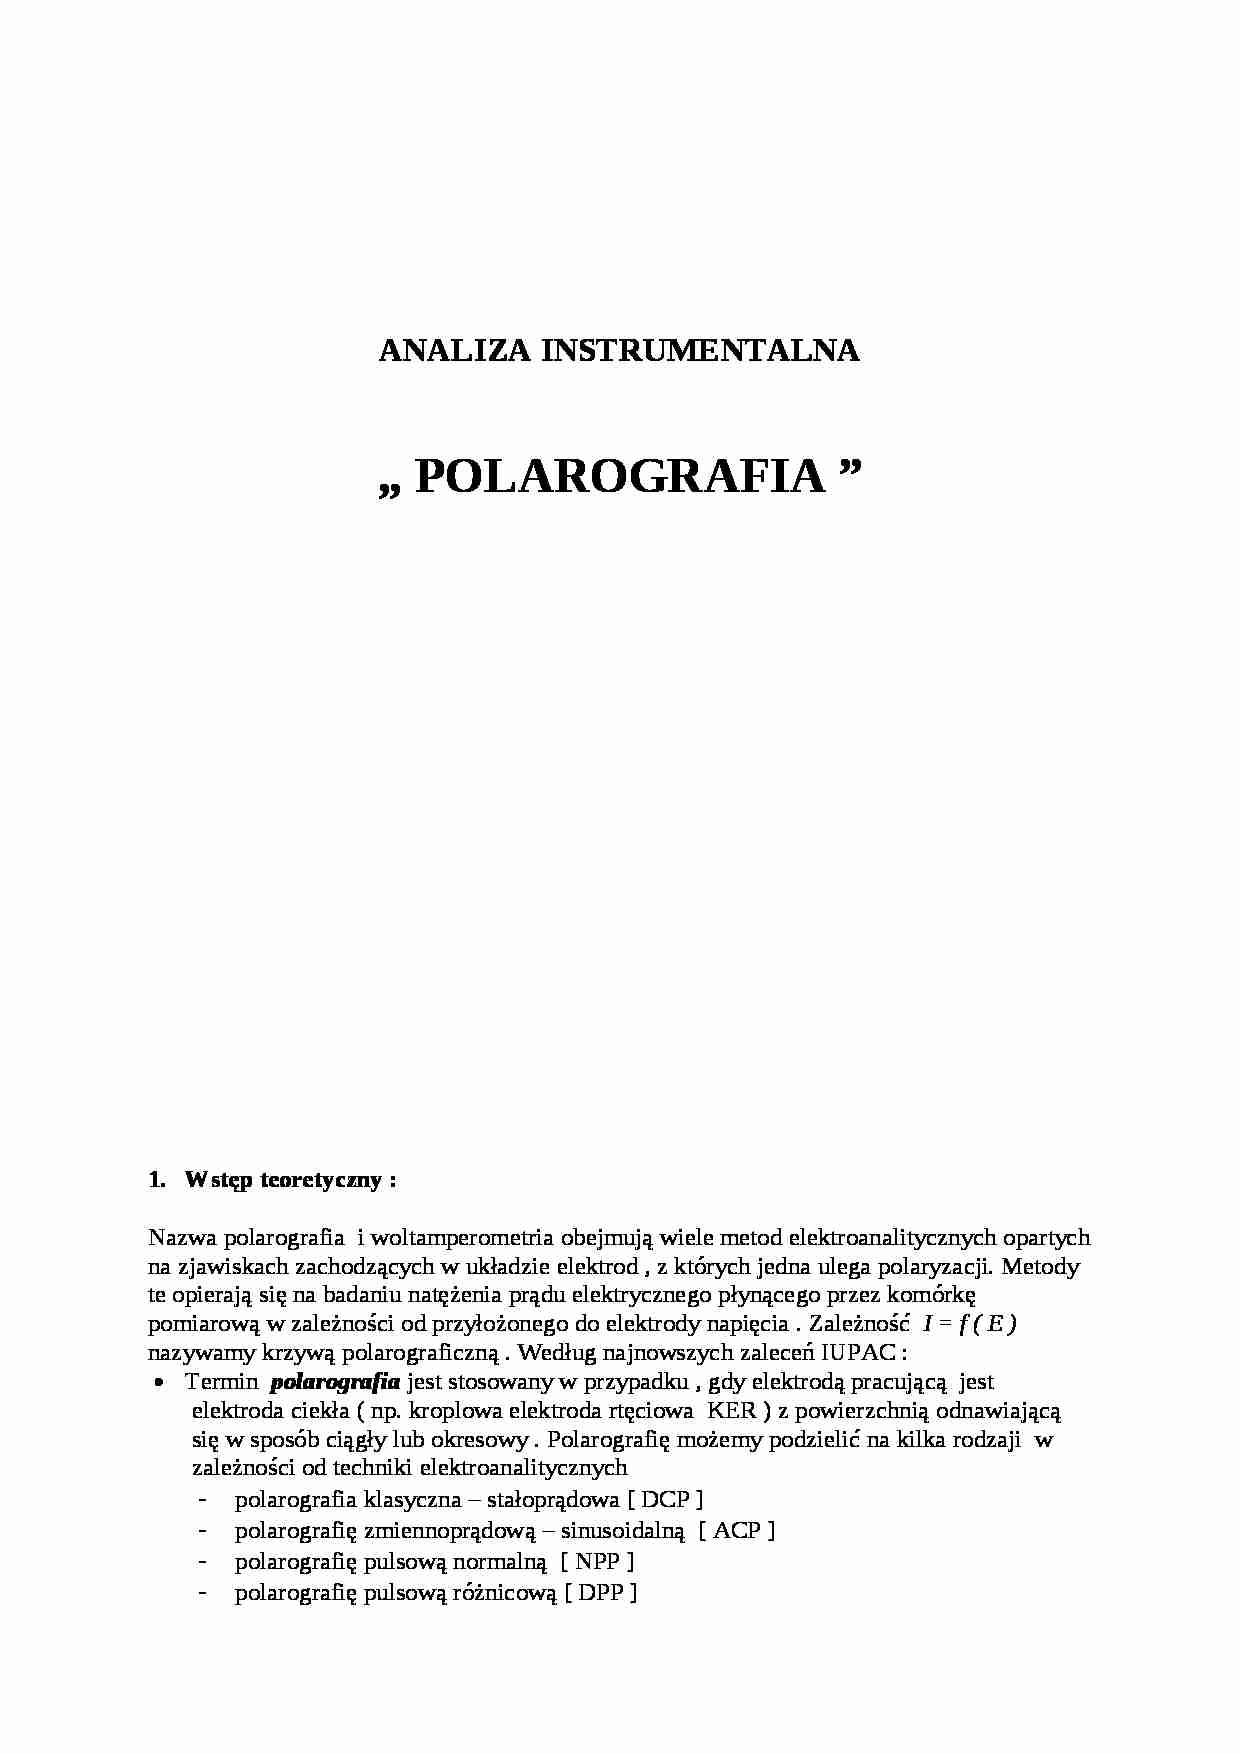 Polarografia -  omówienie zagadnienia - strona 1